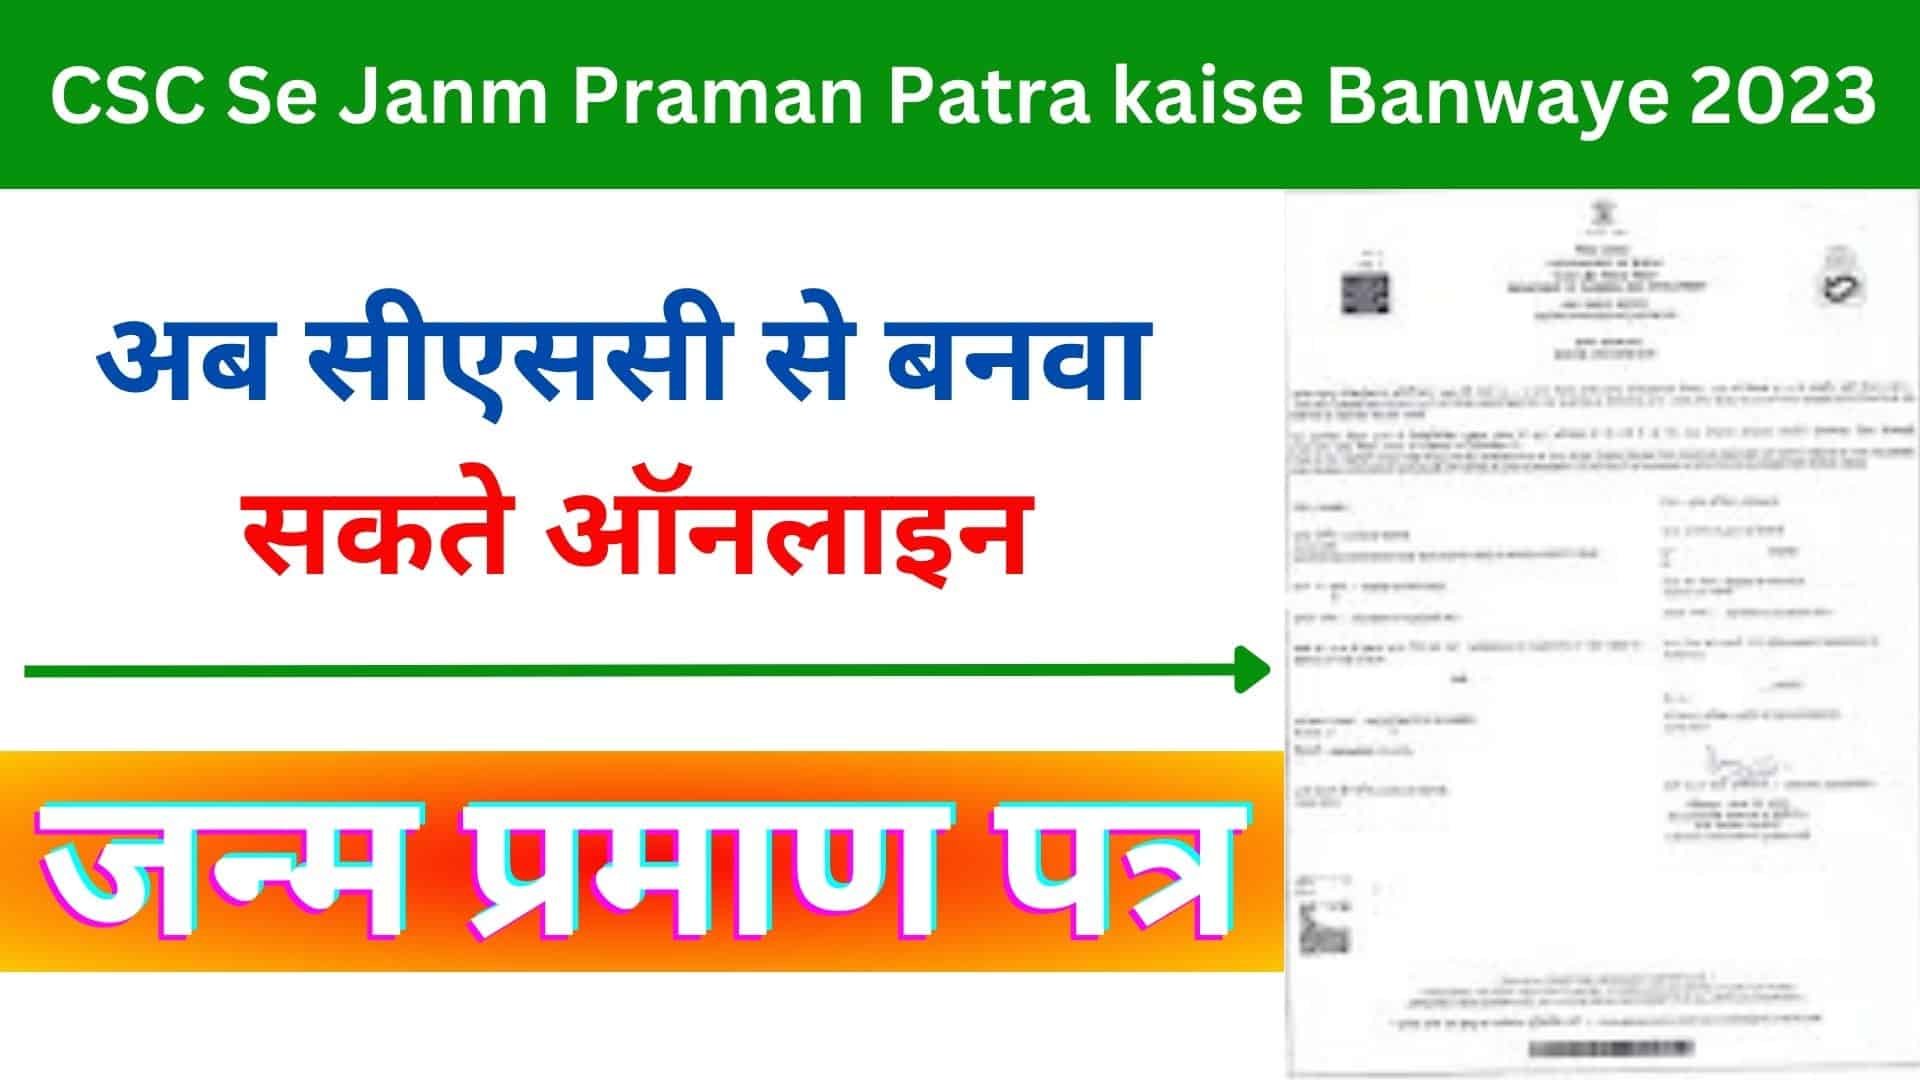 CSC Se Janm Praman Patra kaise Banwaye 2023 : अब सीएससी से बनवा सकते 2 दिन के अन्दर जन्म प्रमाण पत्र